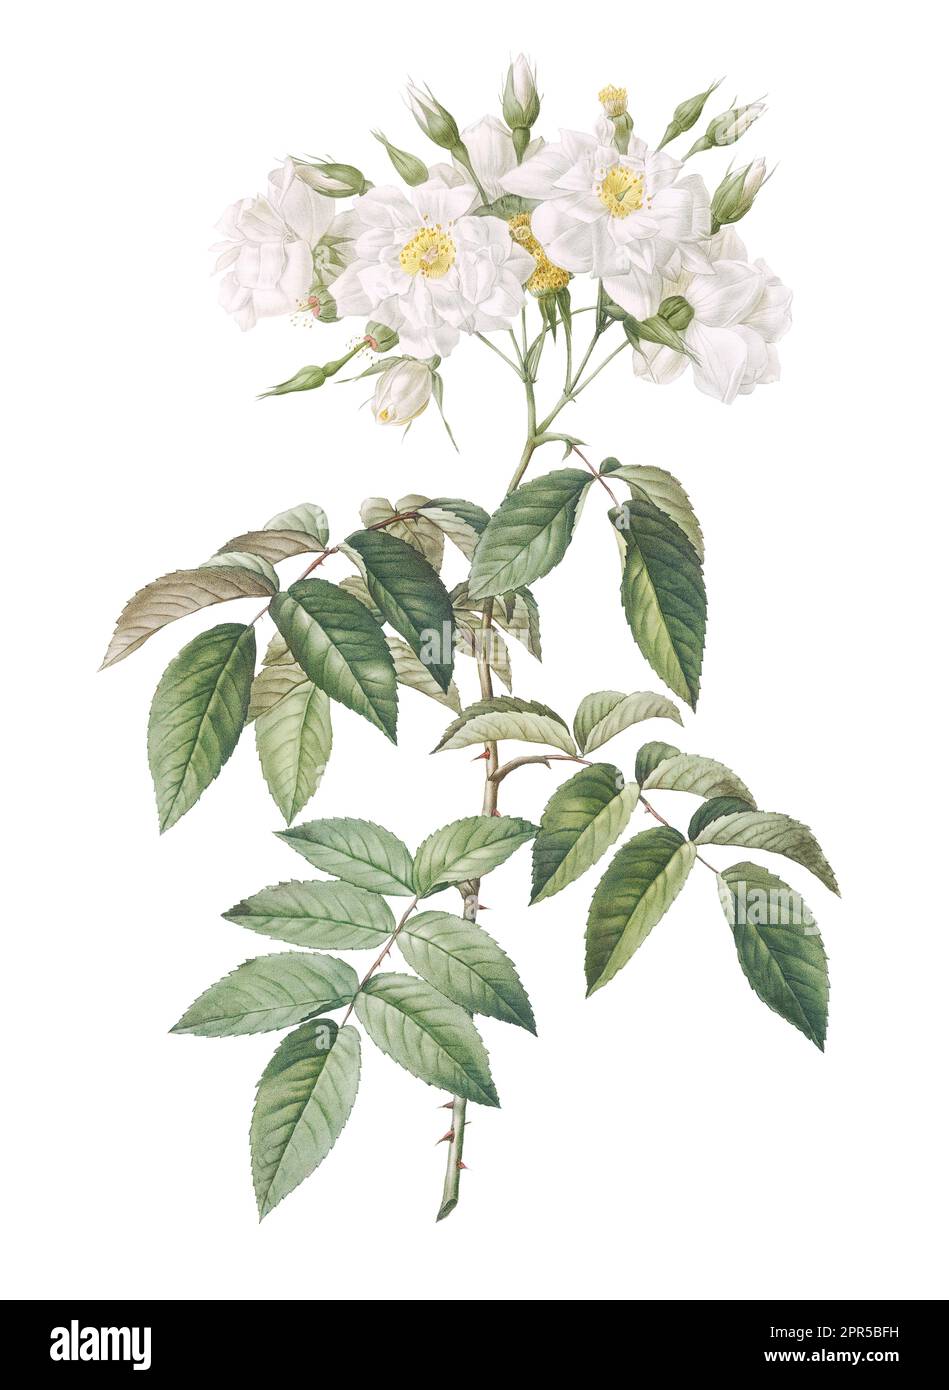 Imprimé beaux-arts composé d'une tige de fleur blanche avec un motif détaillé et complexe de pétales et de feuilles Banque D'Images